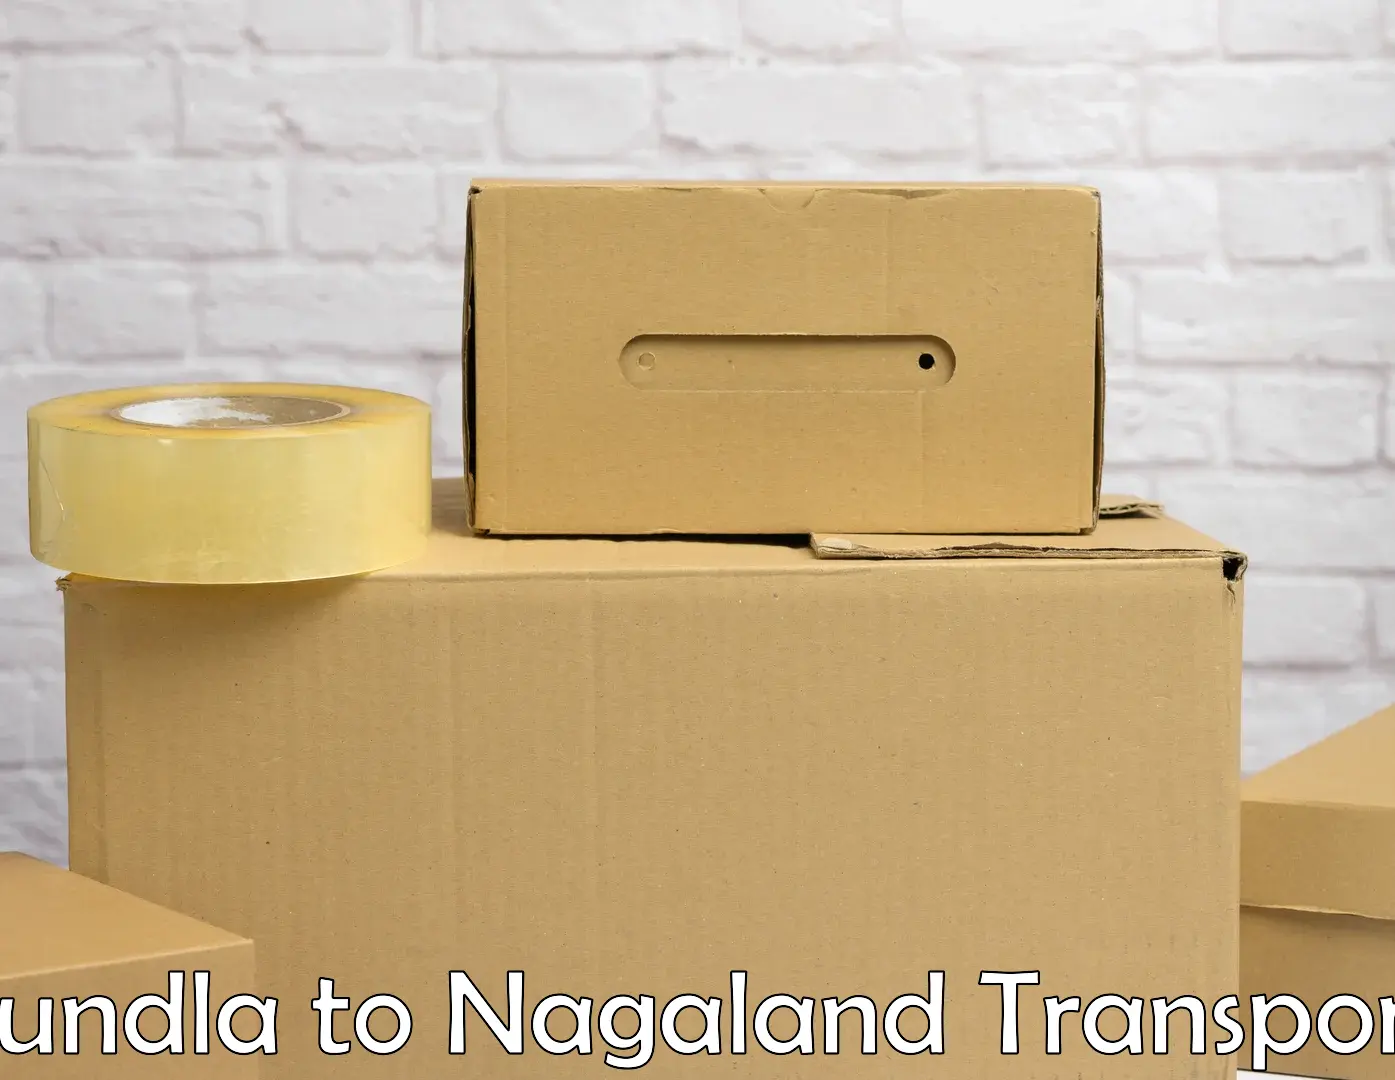 Road transport online services Sundla to NIT Nagaland